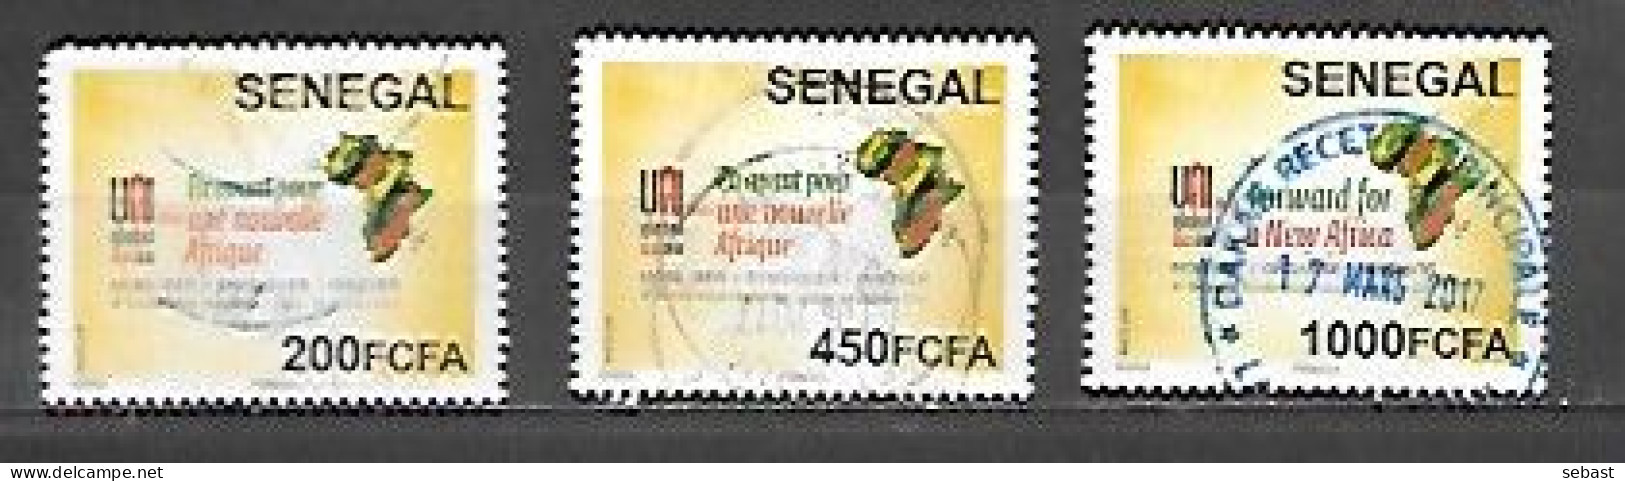 TIMBRE OBLITERE DU SENEGAL DE 2017 N° MICHEL 2254/56 - Sénégal (1960-...)